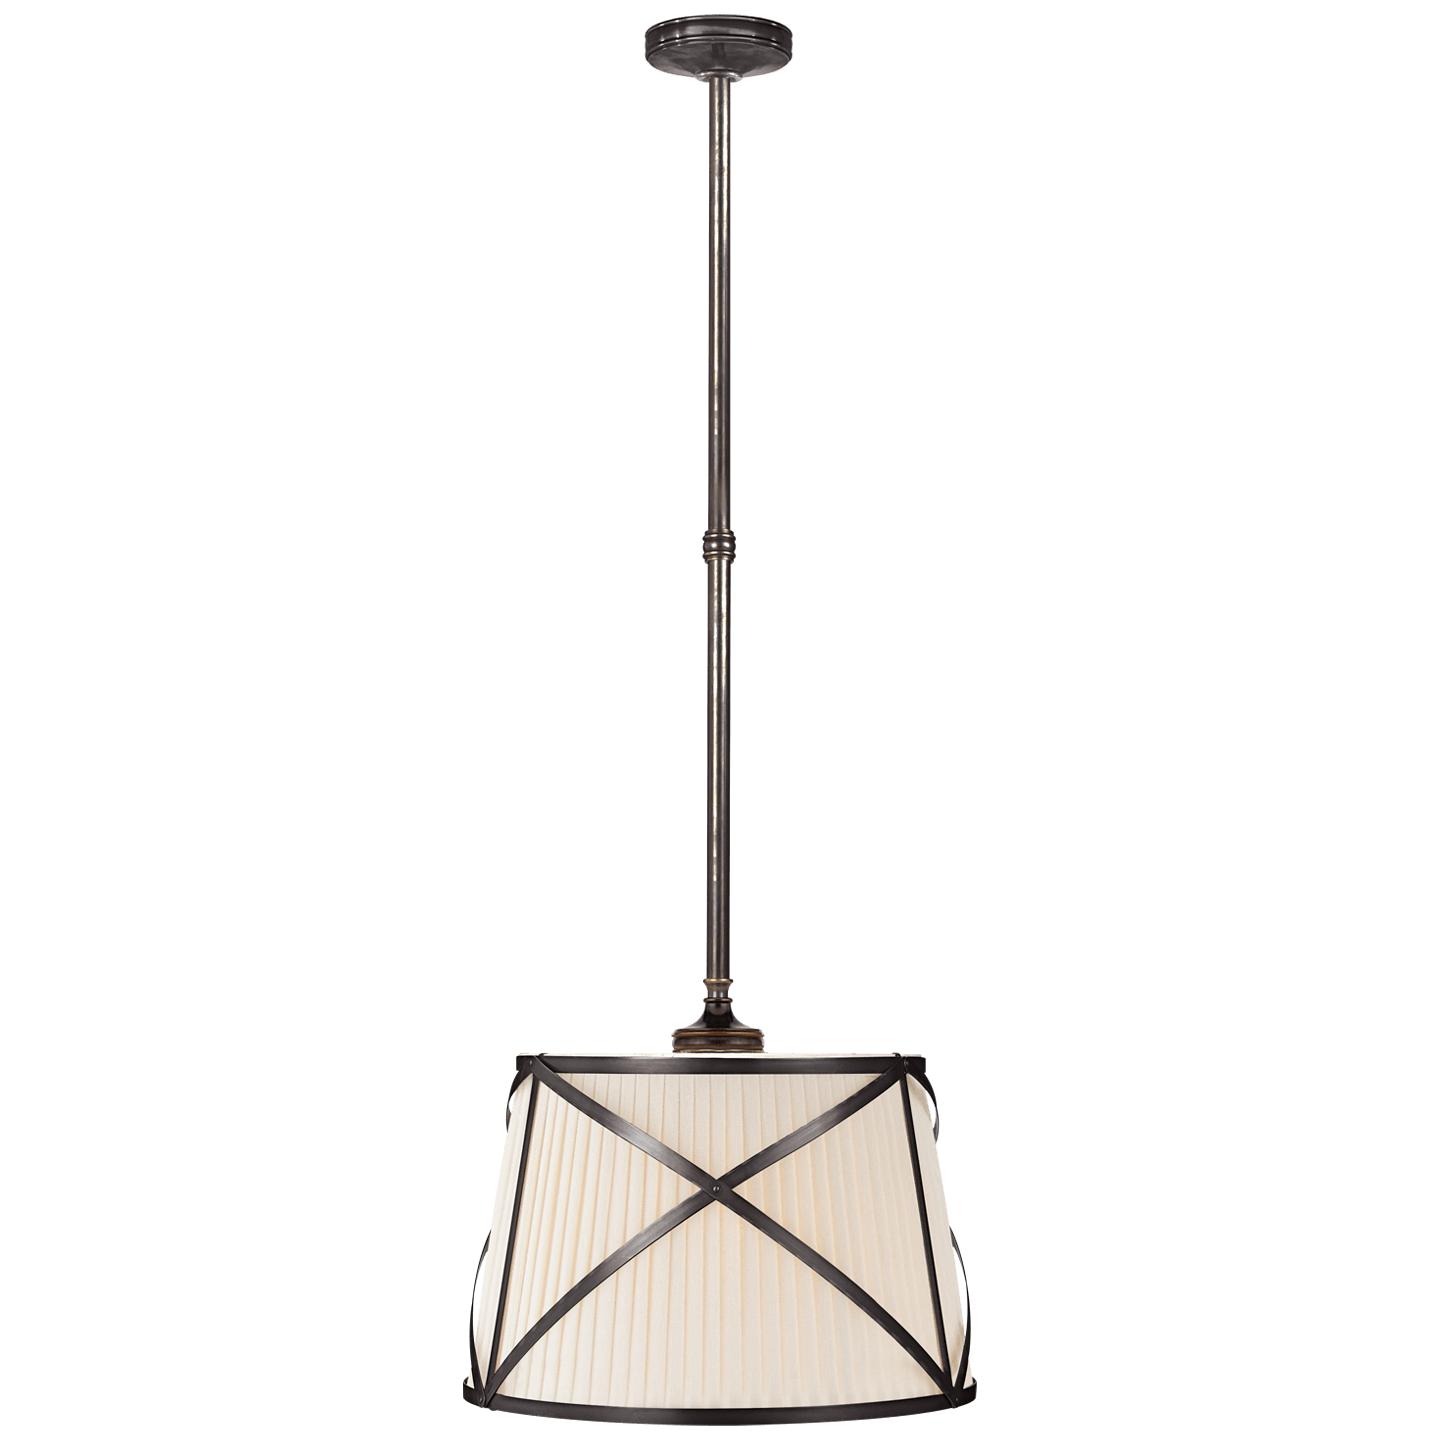 Купить Подвесной светильник Grosvenor Single Hanging Shade в интернет-магазине roooms.ru